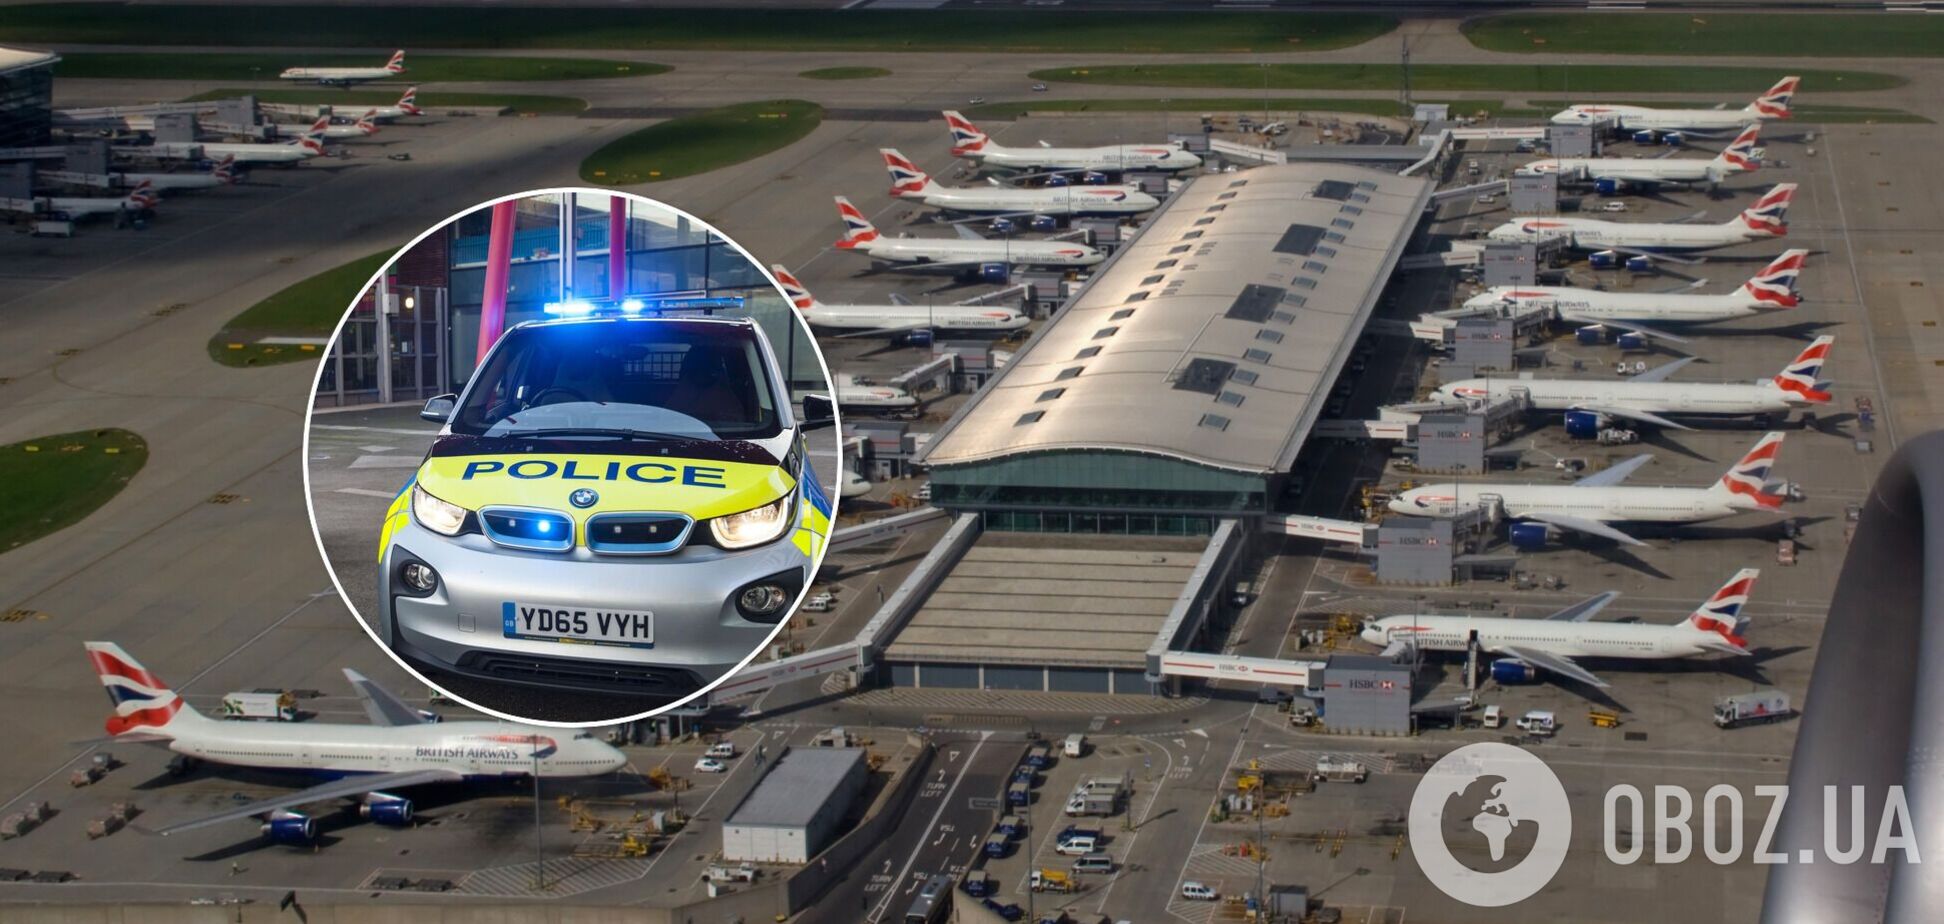 В аэропорту Лондона задержали экстремиста, подозреваемого в подготовке терактов